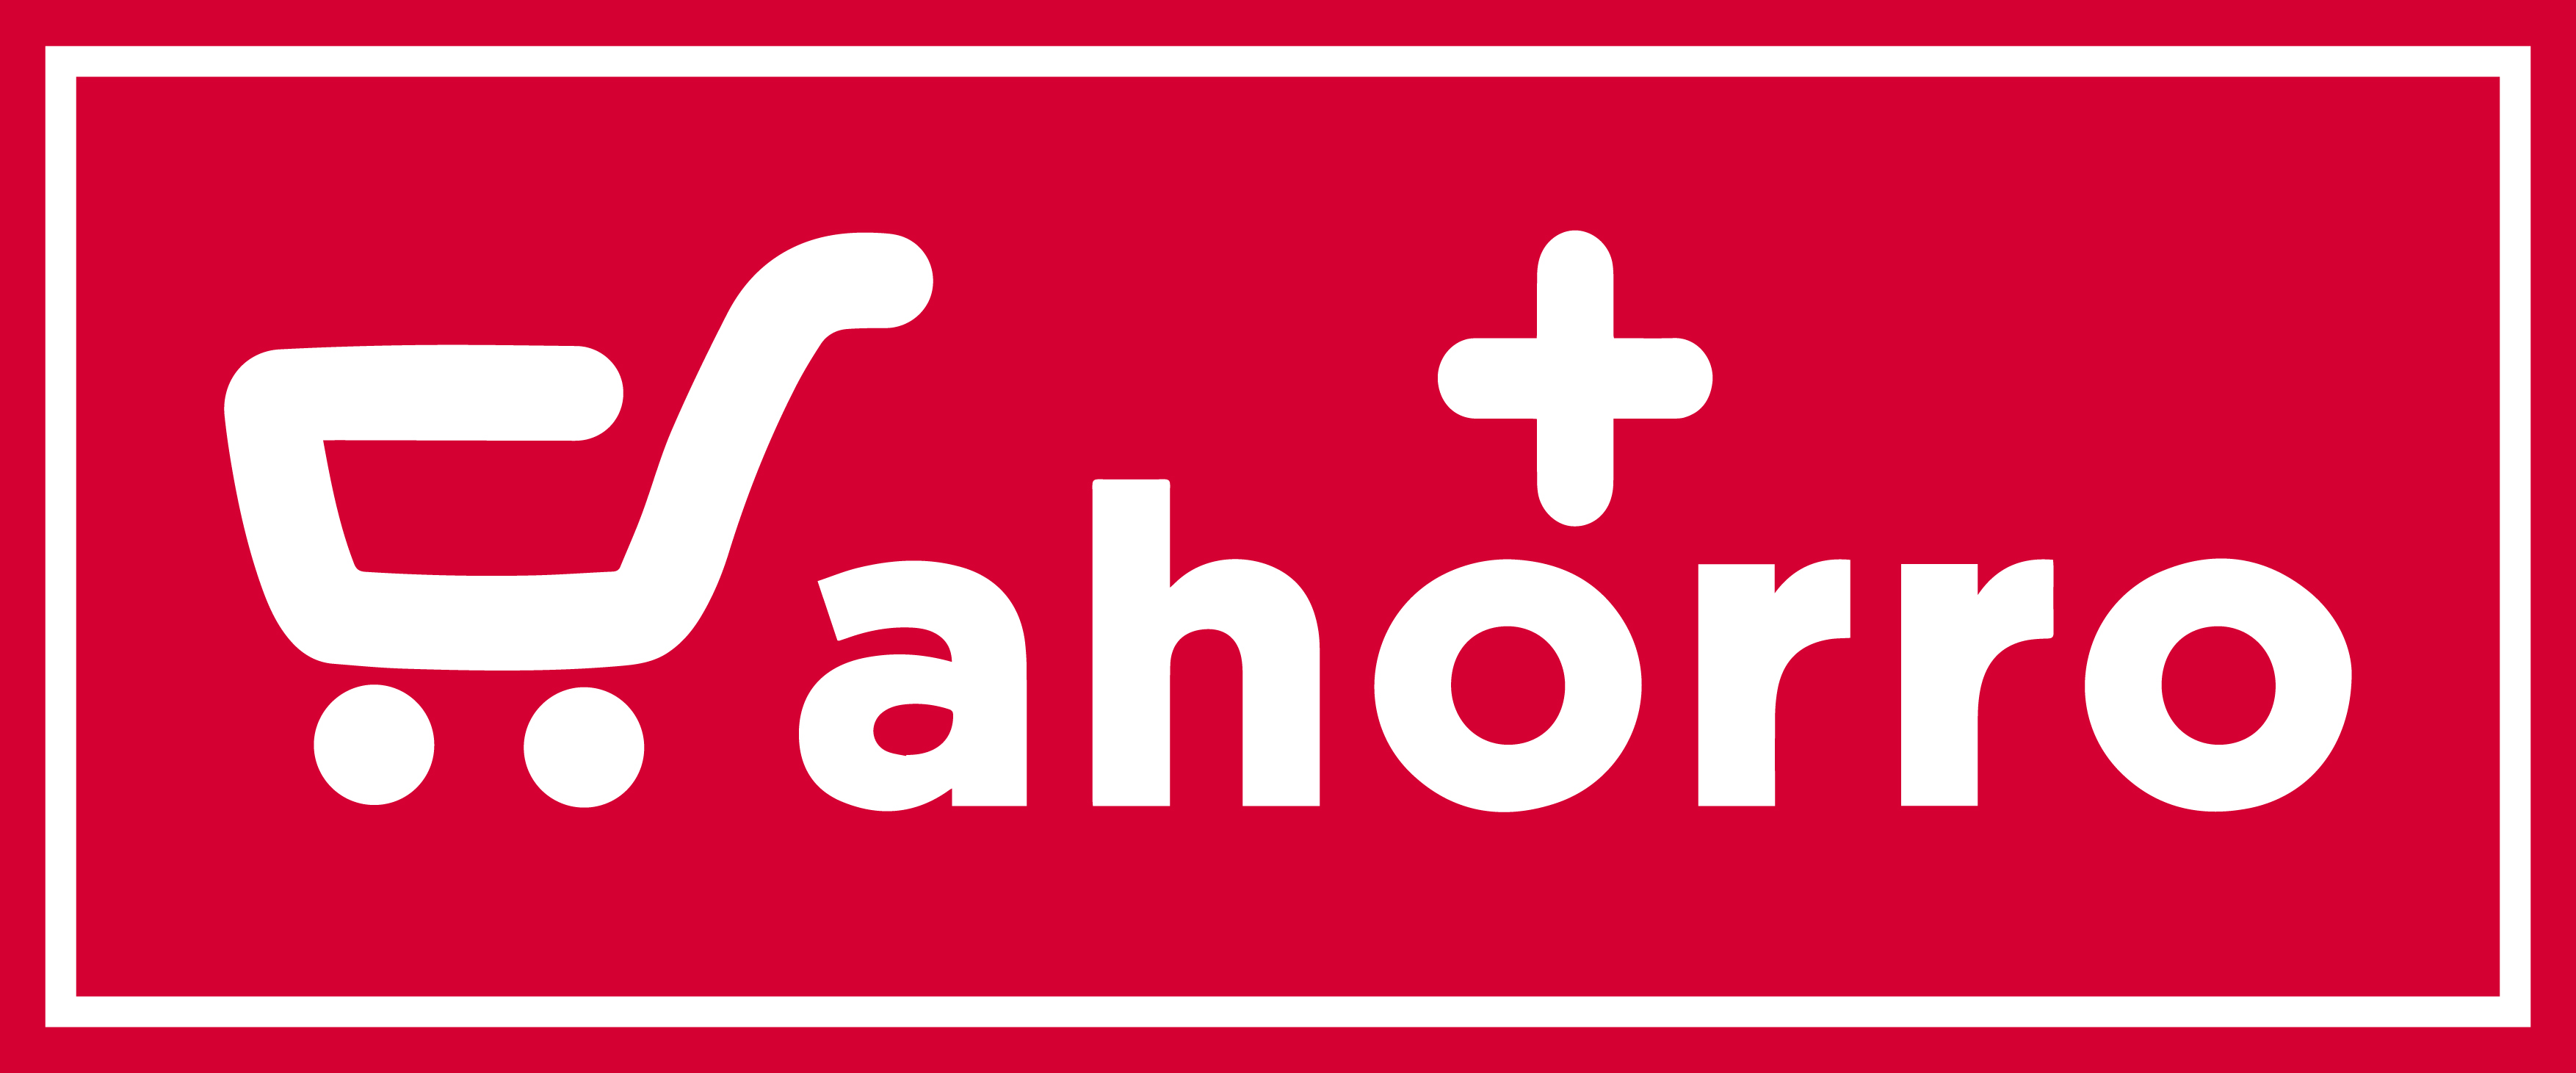 Logotipo Cash Más Ahorro